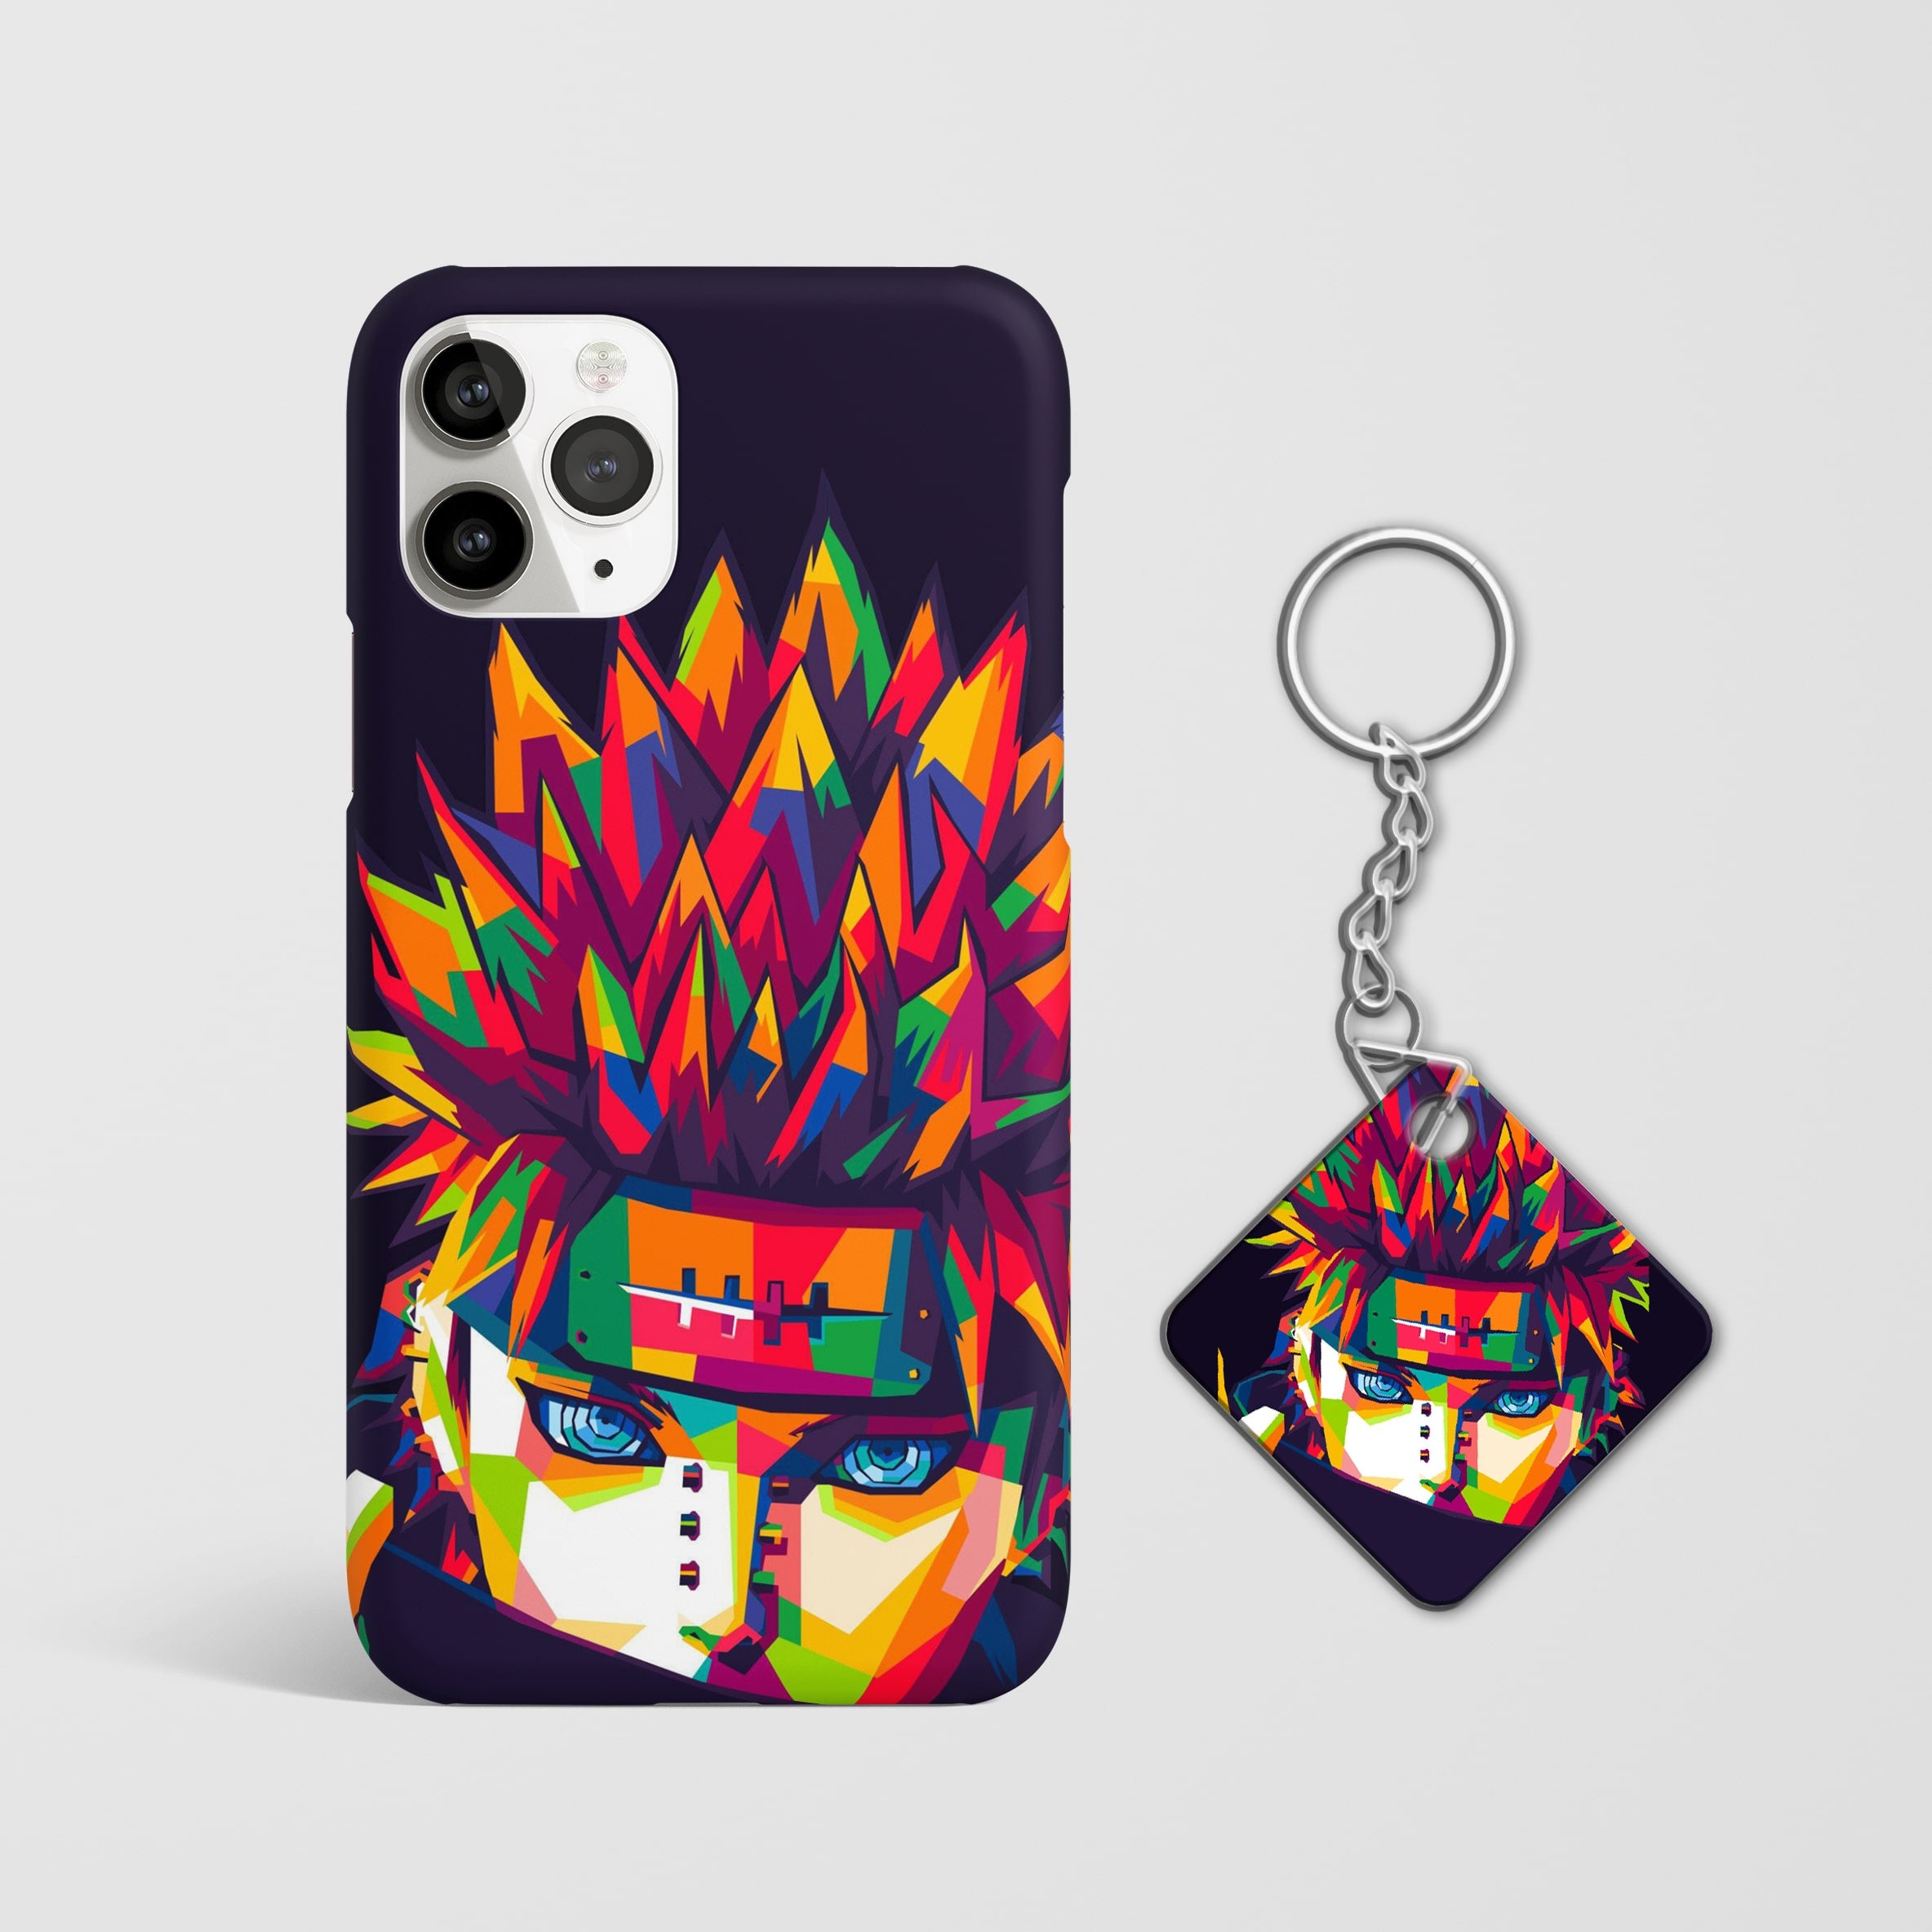 Naruto Uzumaki Colored Phone Cover with Keychain